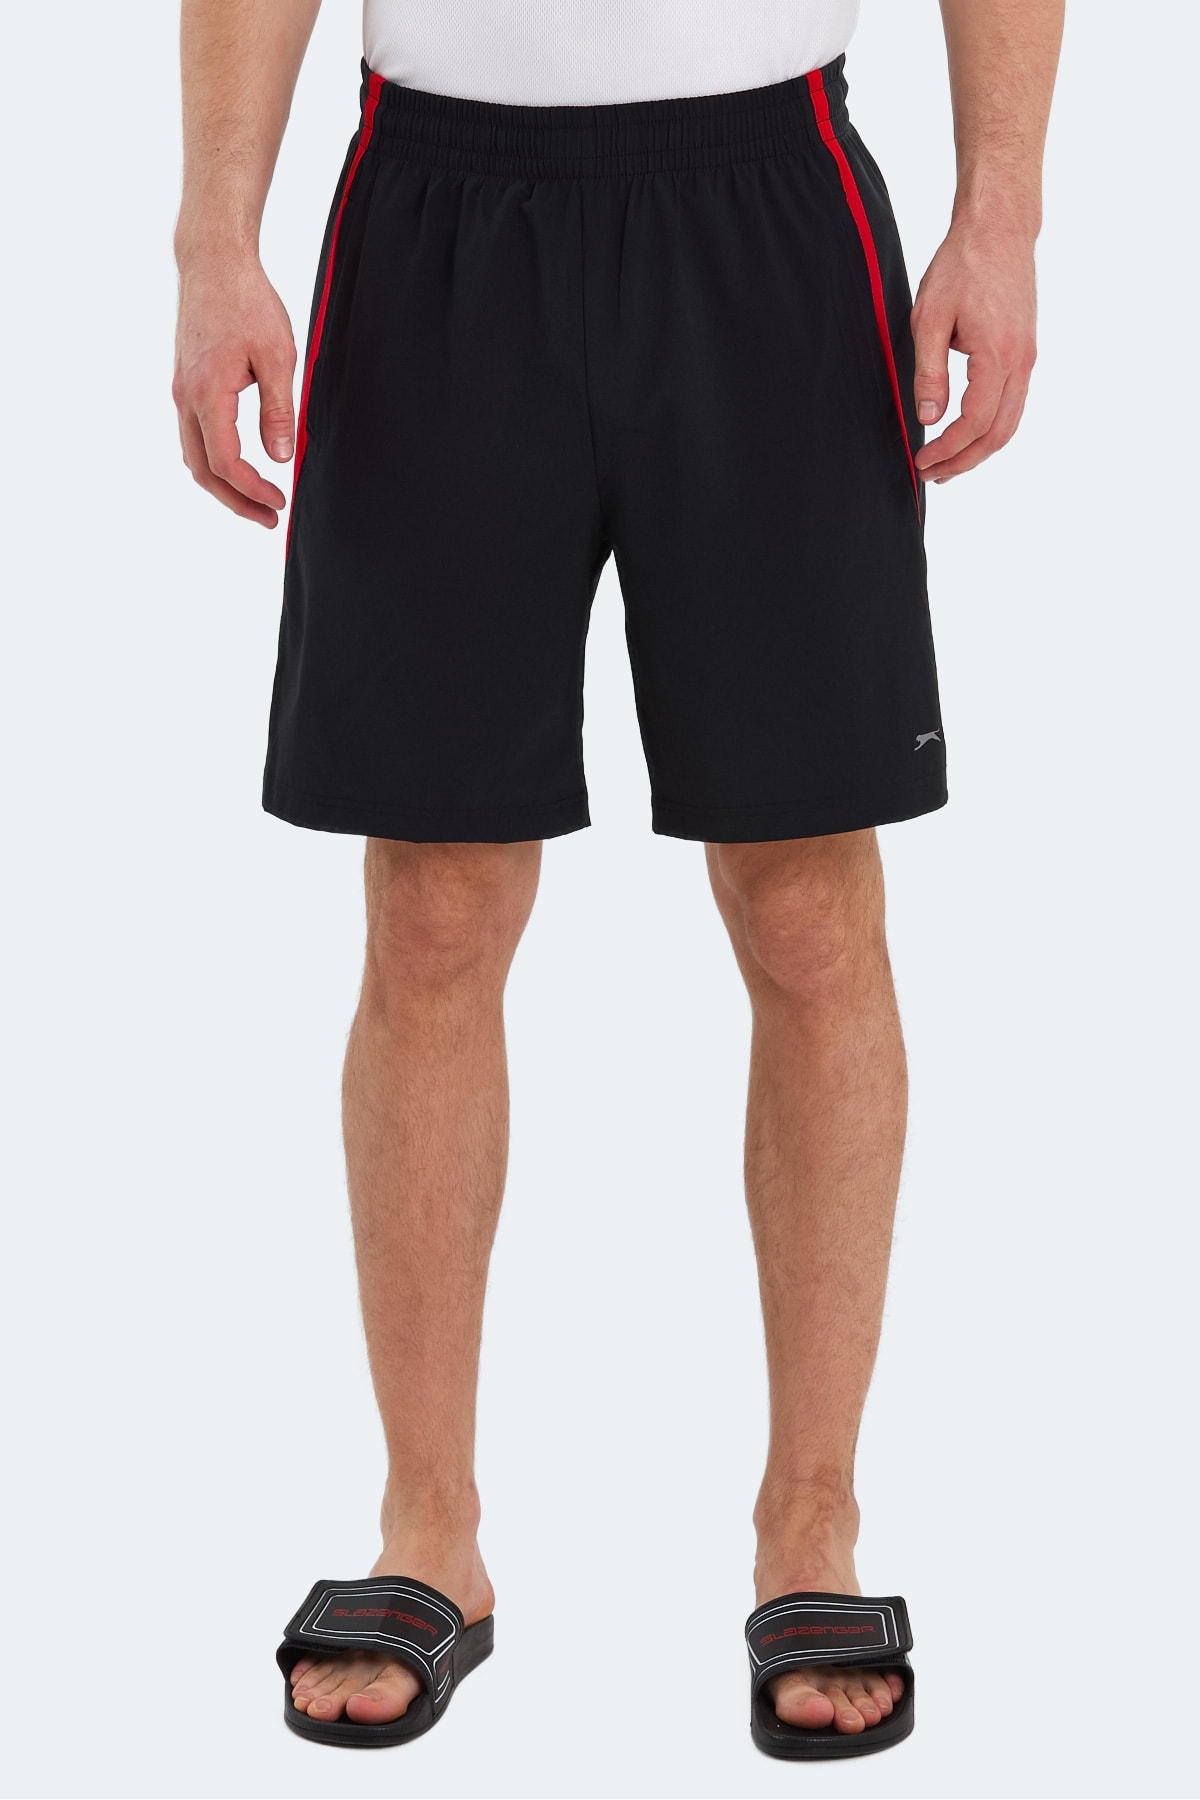 Slazenger Randy Men's Shorts Black